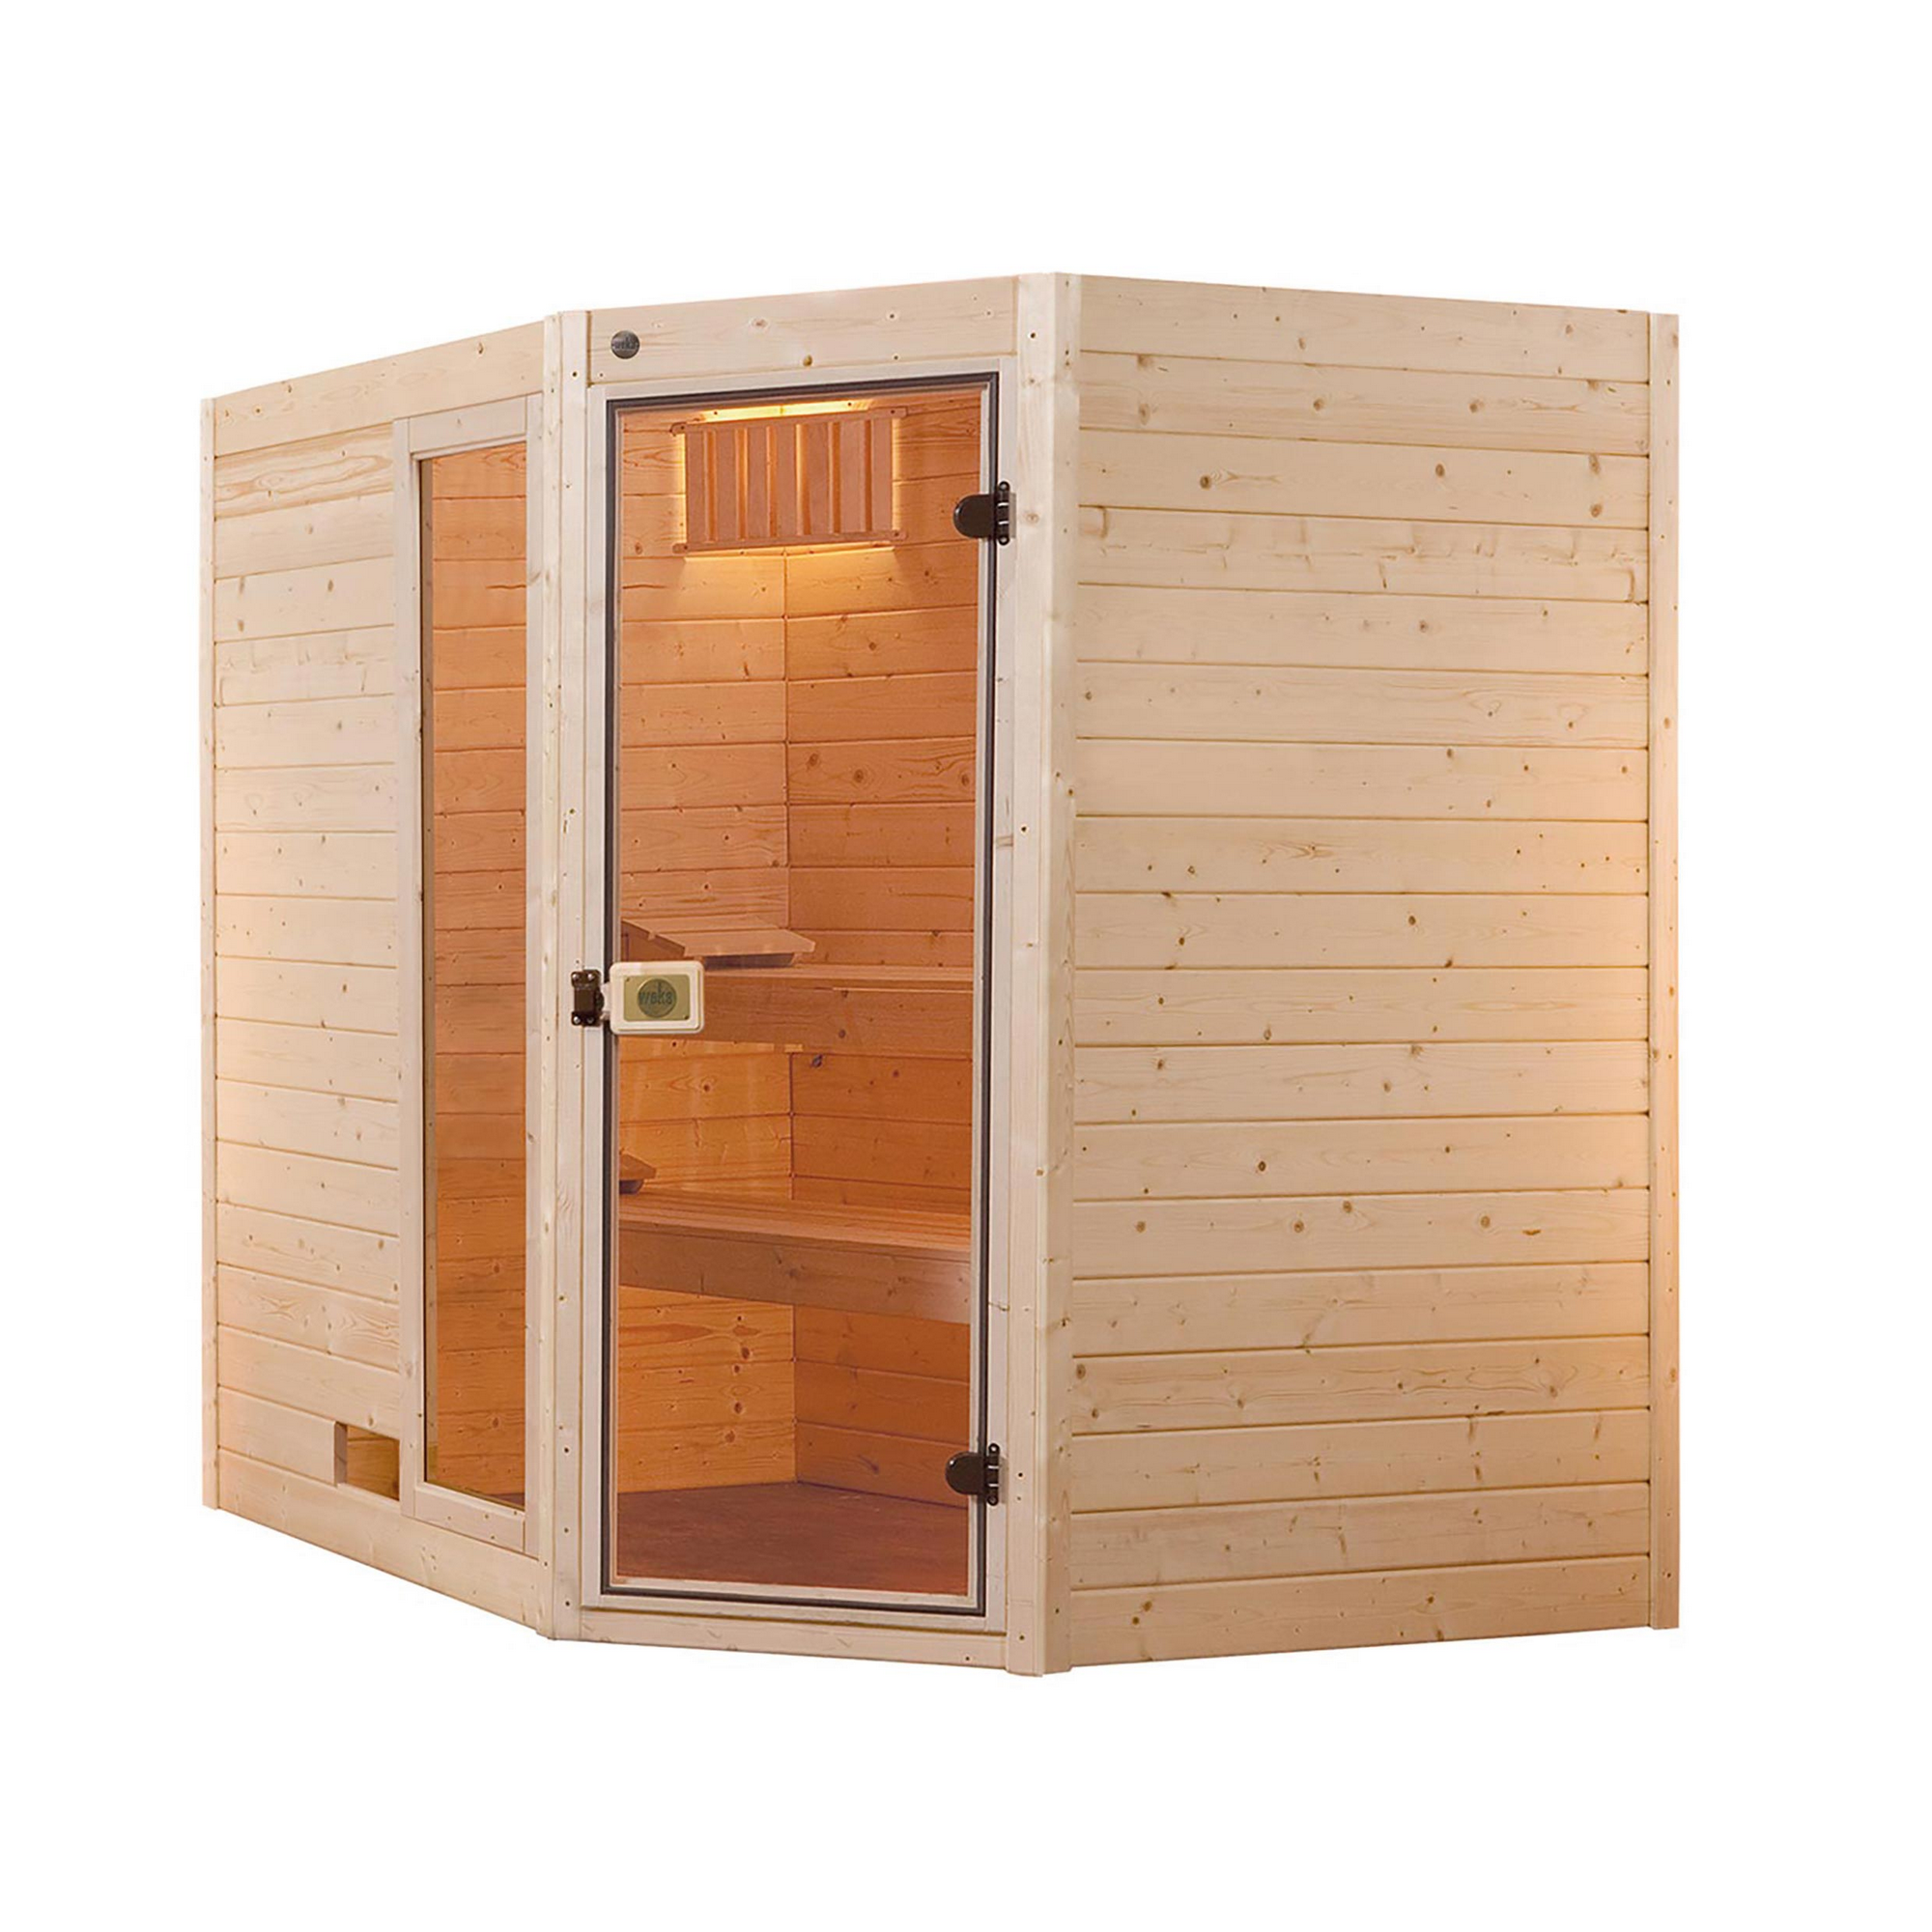 Massivholz-Sauna 'Valida 4 Eck' mit 9 kW K-Ofenset, integrierter Steuerung, Glastür, Fenster 237 x 187 x 203,5 cm + product picture